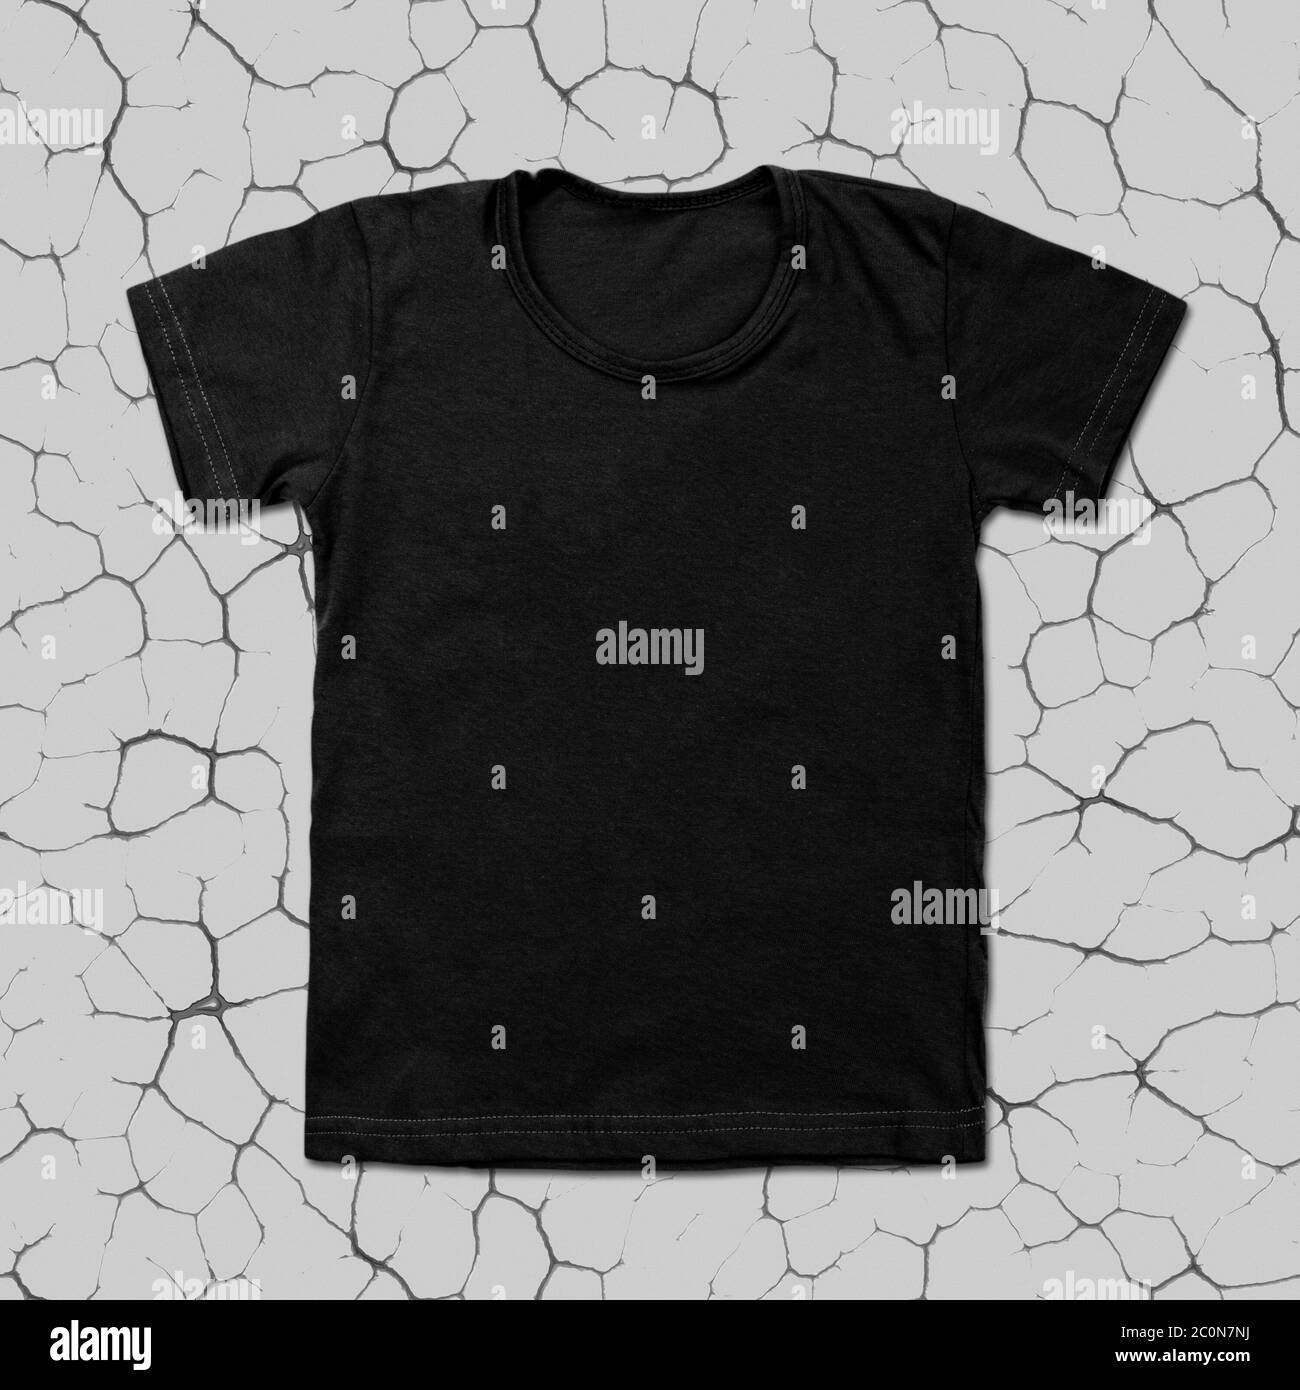 Black blank t-shirt on cracked background Stock Photo